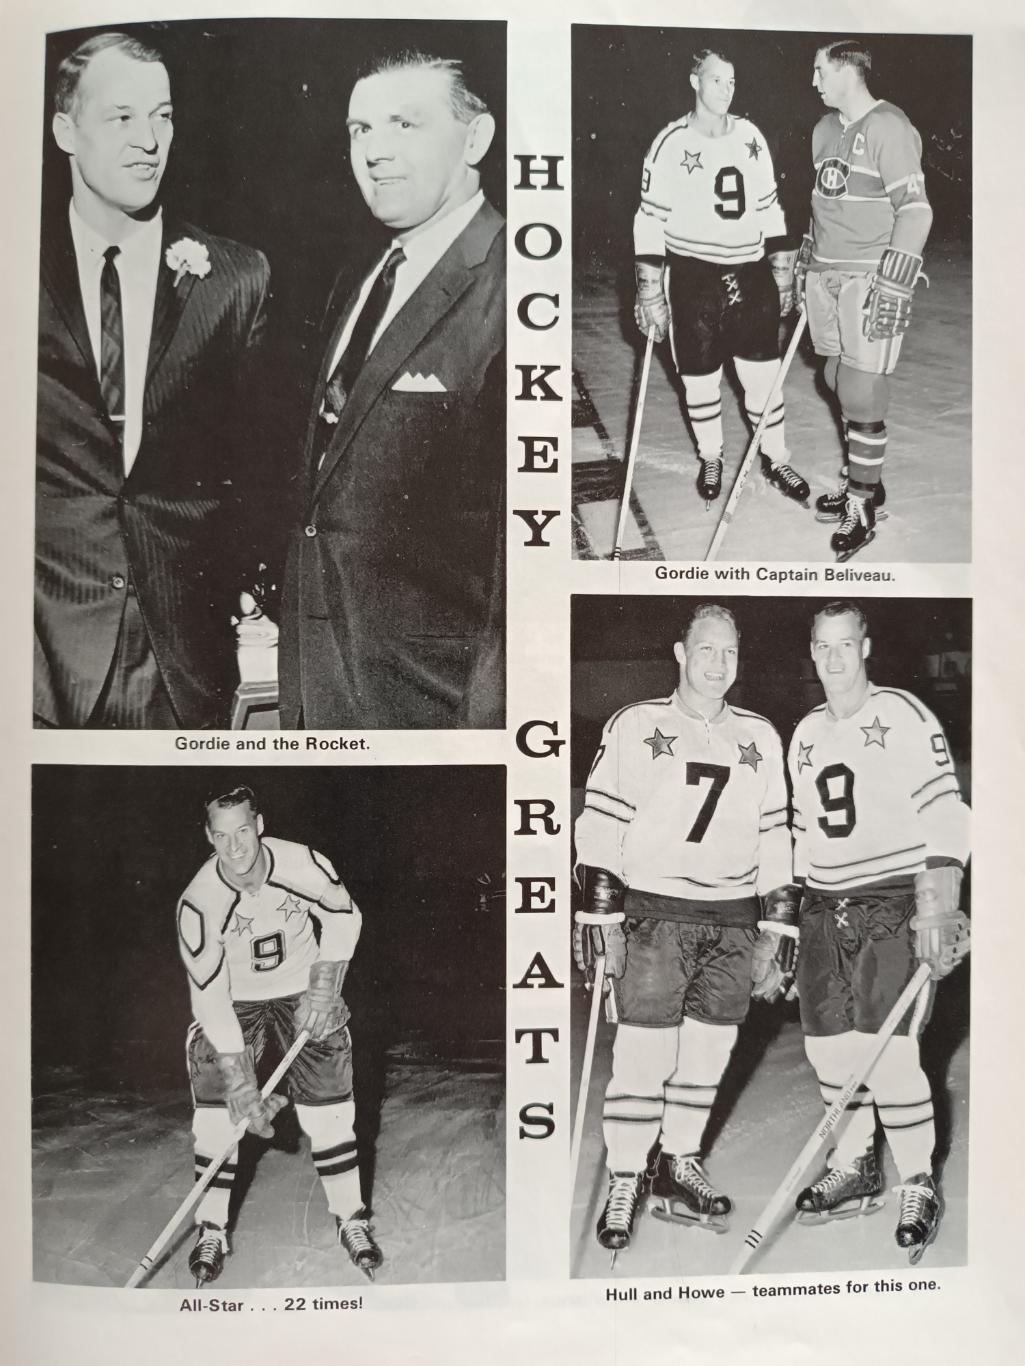 ХОККЕЙ КНИГА АЛЬБОМ НХЛ ГОРДИ ХОУ 786 ГОЛ NHL 1972 GORDIE HOWE 786 CAREER GOALS 3